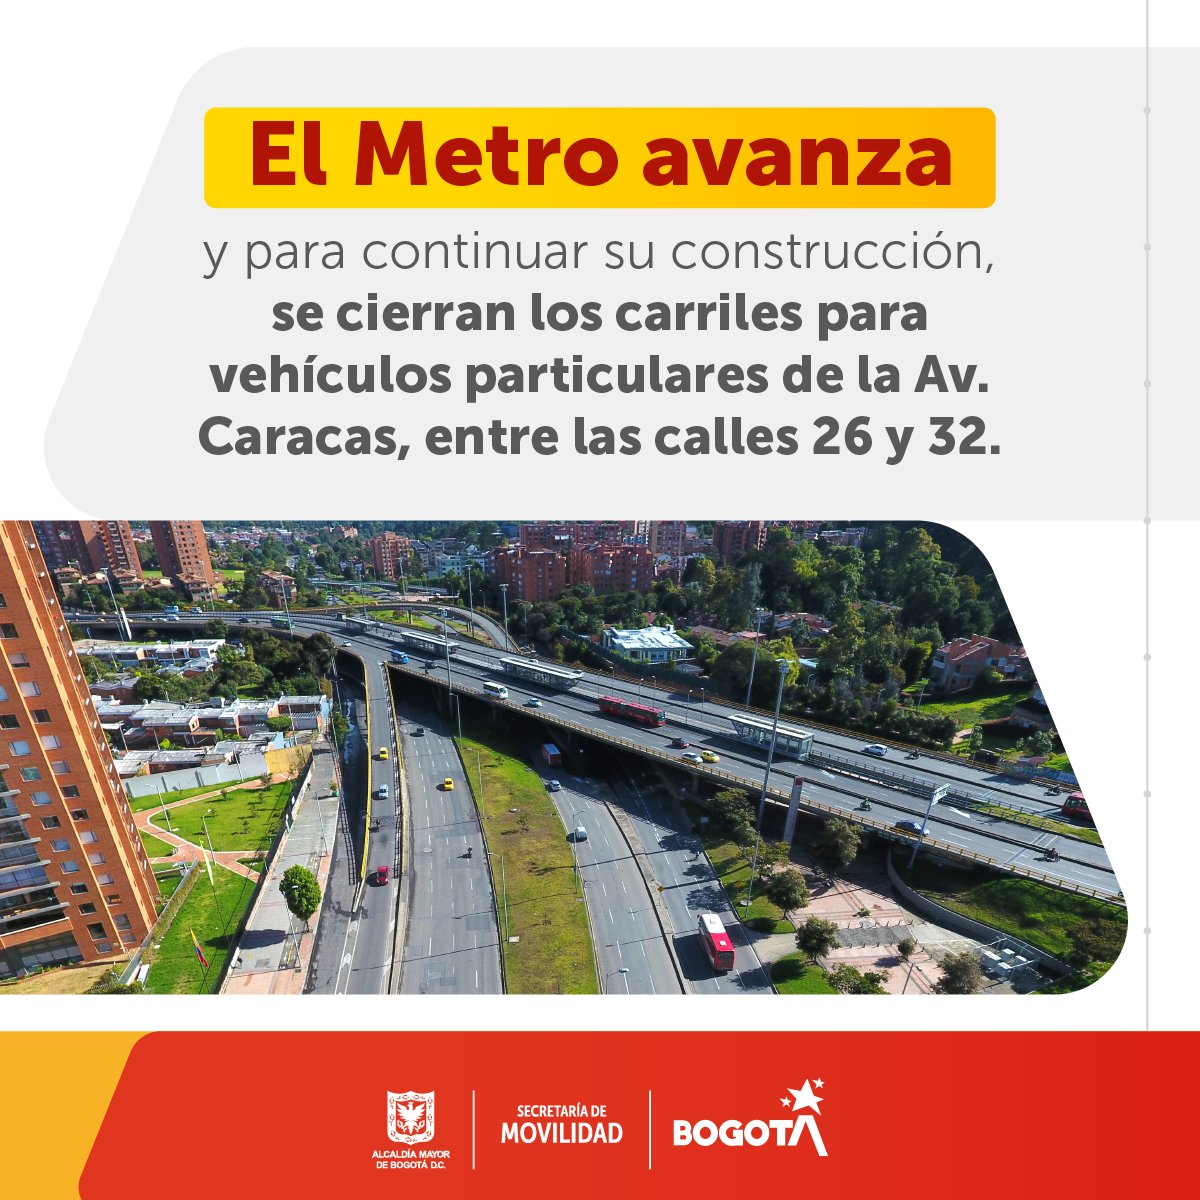 Si frecuentemente te mueves en carro por la av. Caracas, entre las calles 26 y 32, ten presente que por obras del @MetroBogota, a partir del 29 de mayo, estarán cerrados los carriles para vehículos particulares.